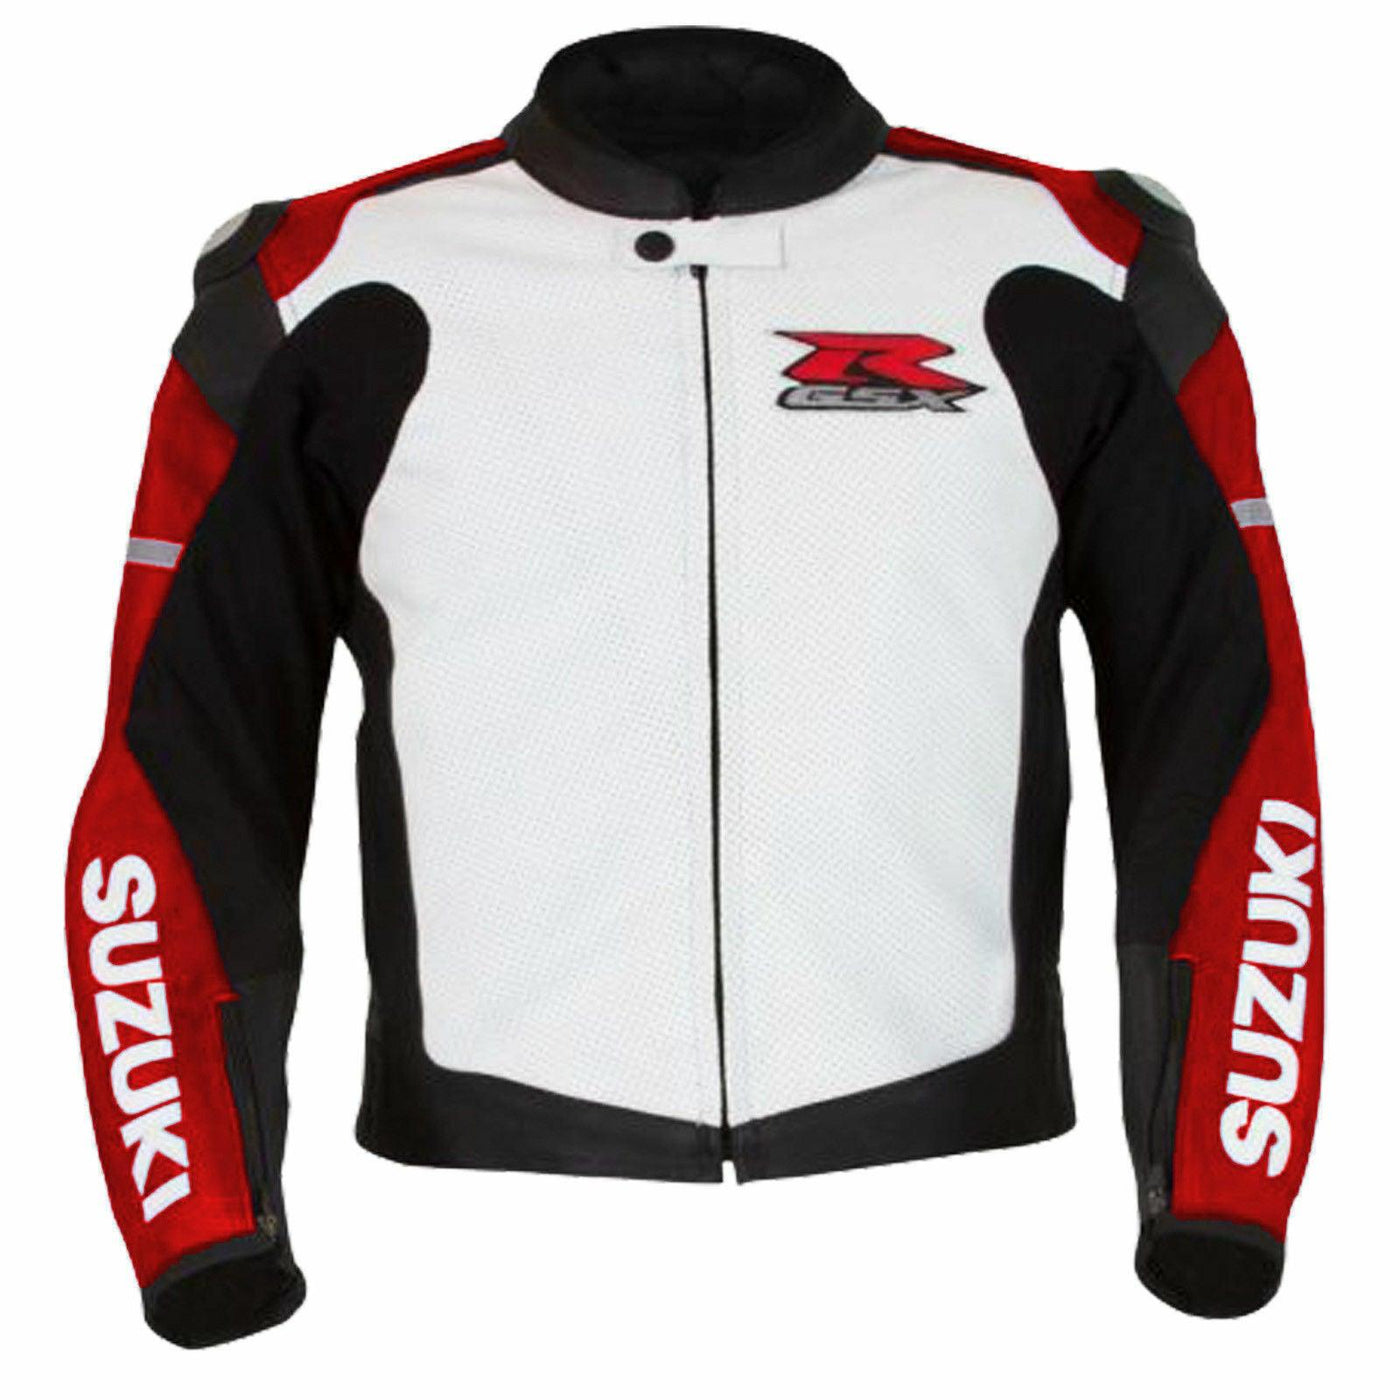 ZMJ-065 Racing Motorbike/Motorcycle Leather Jacket Custom Made Jacket For Bikers - ZEES MOTOR SPORTS